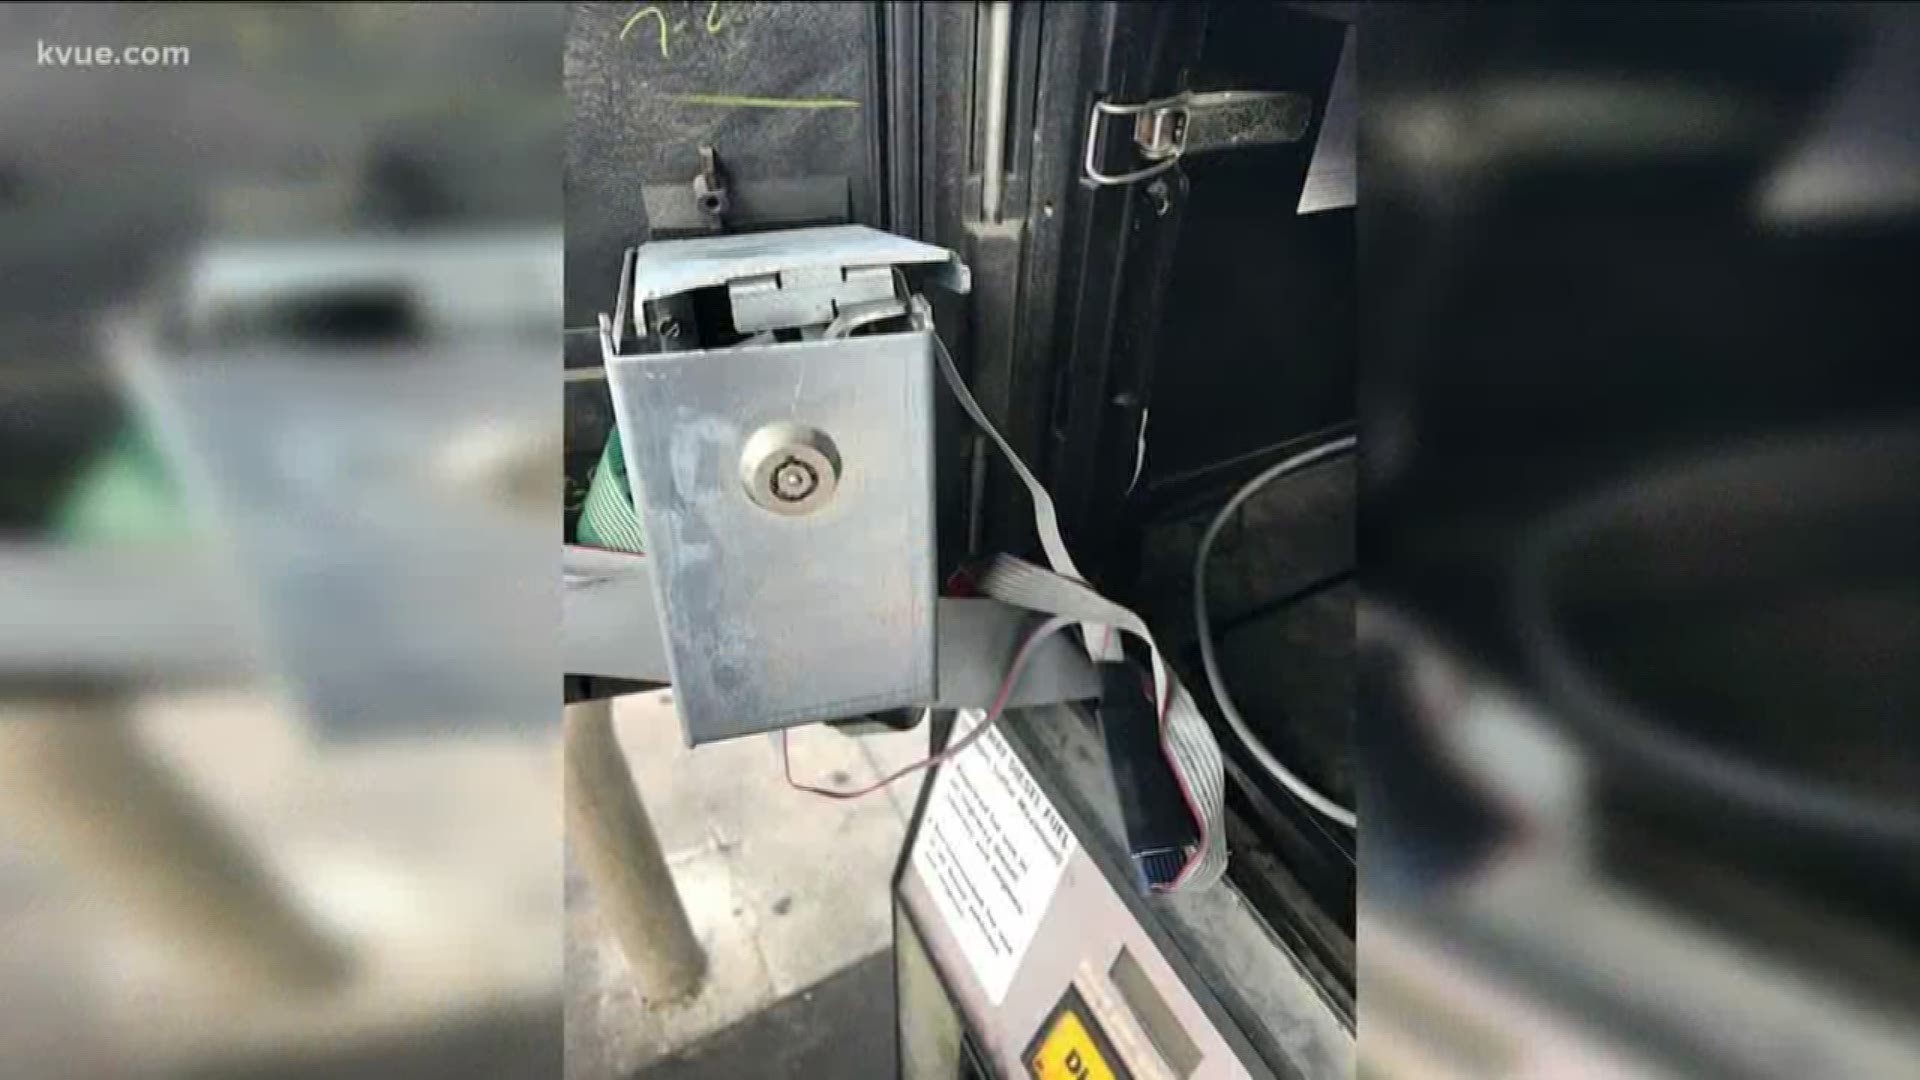 Credit card skimmer found on a gas pump in North Austin